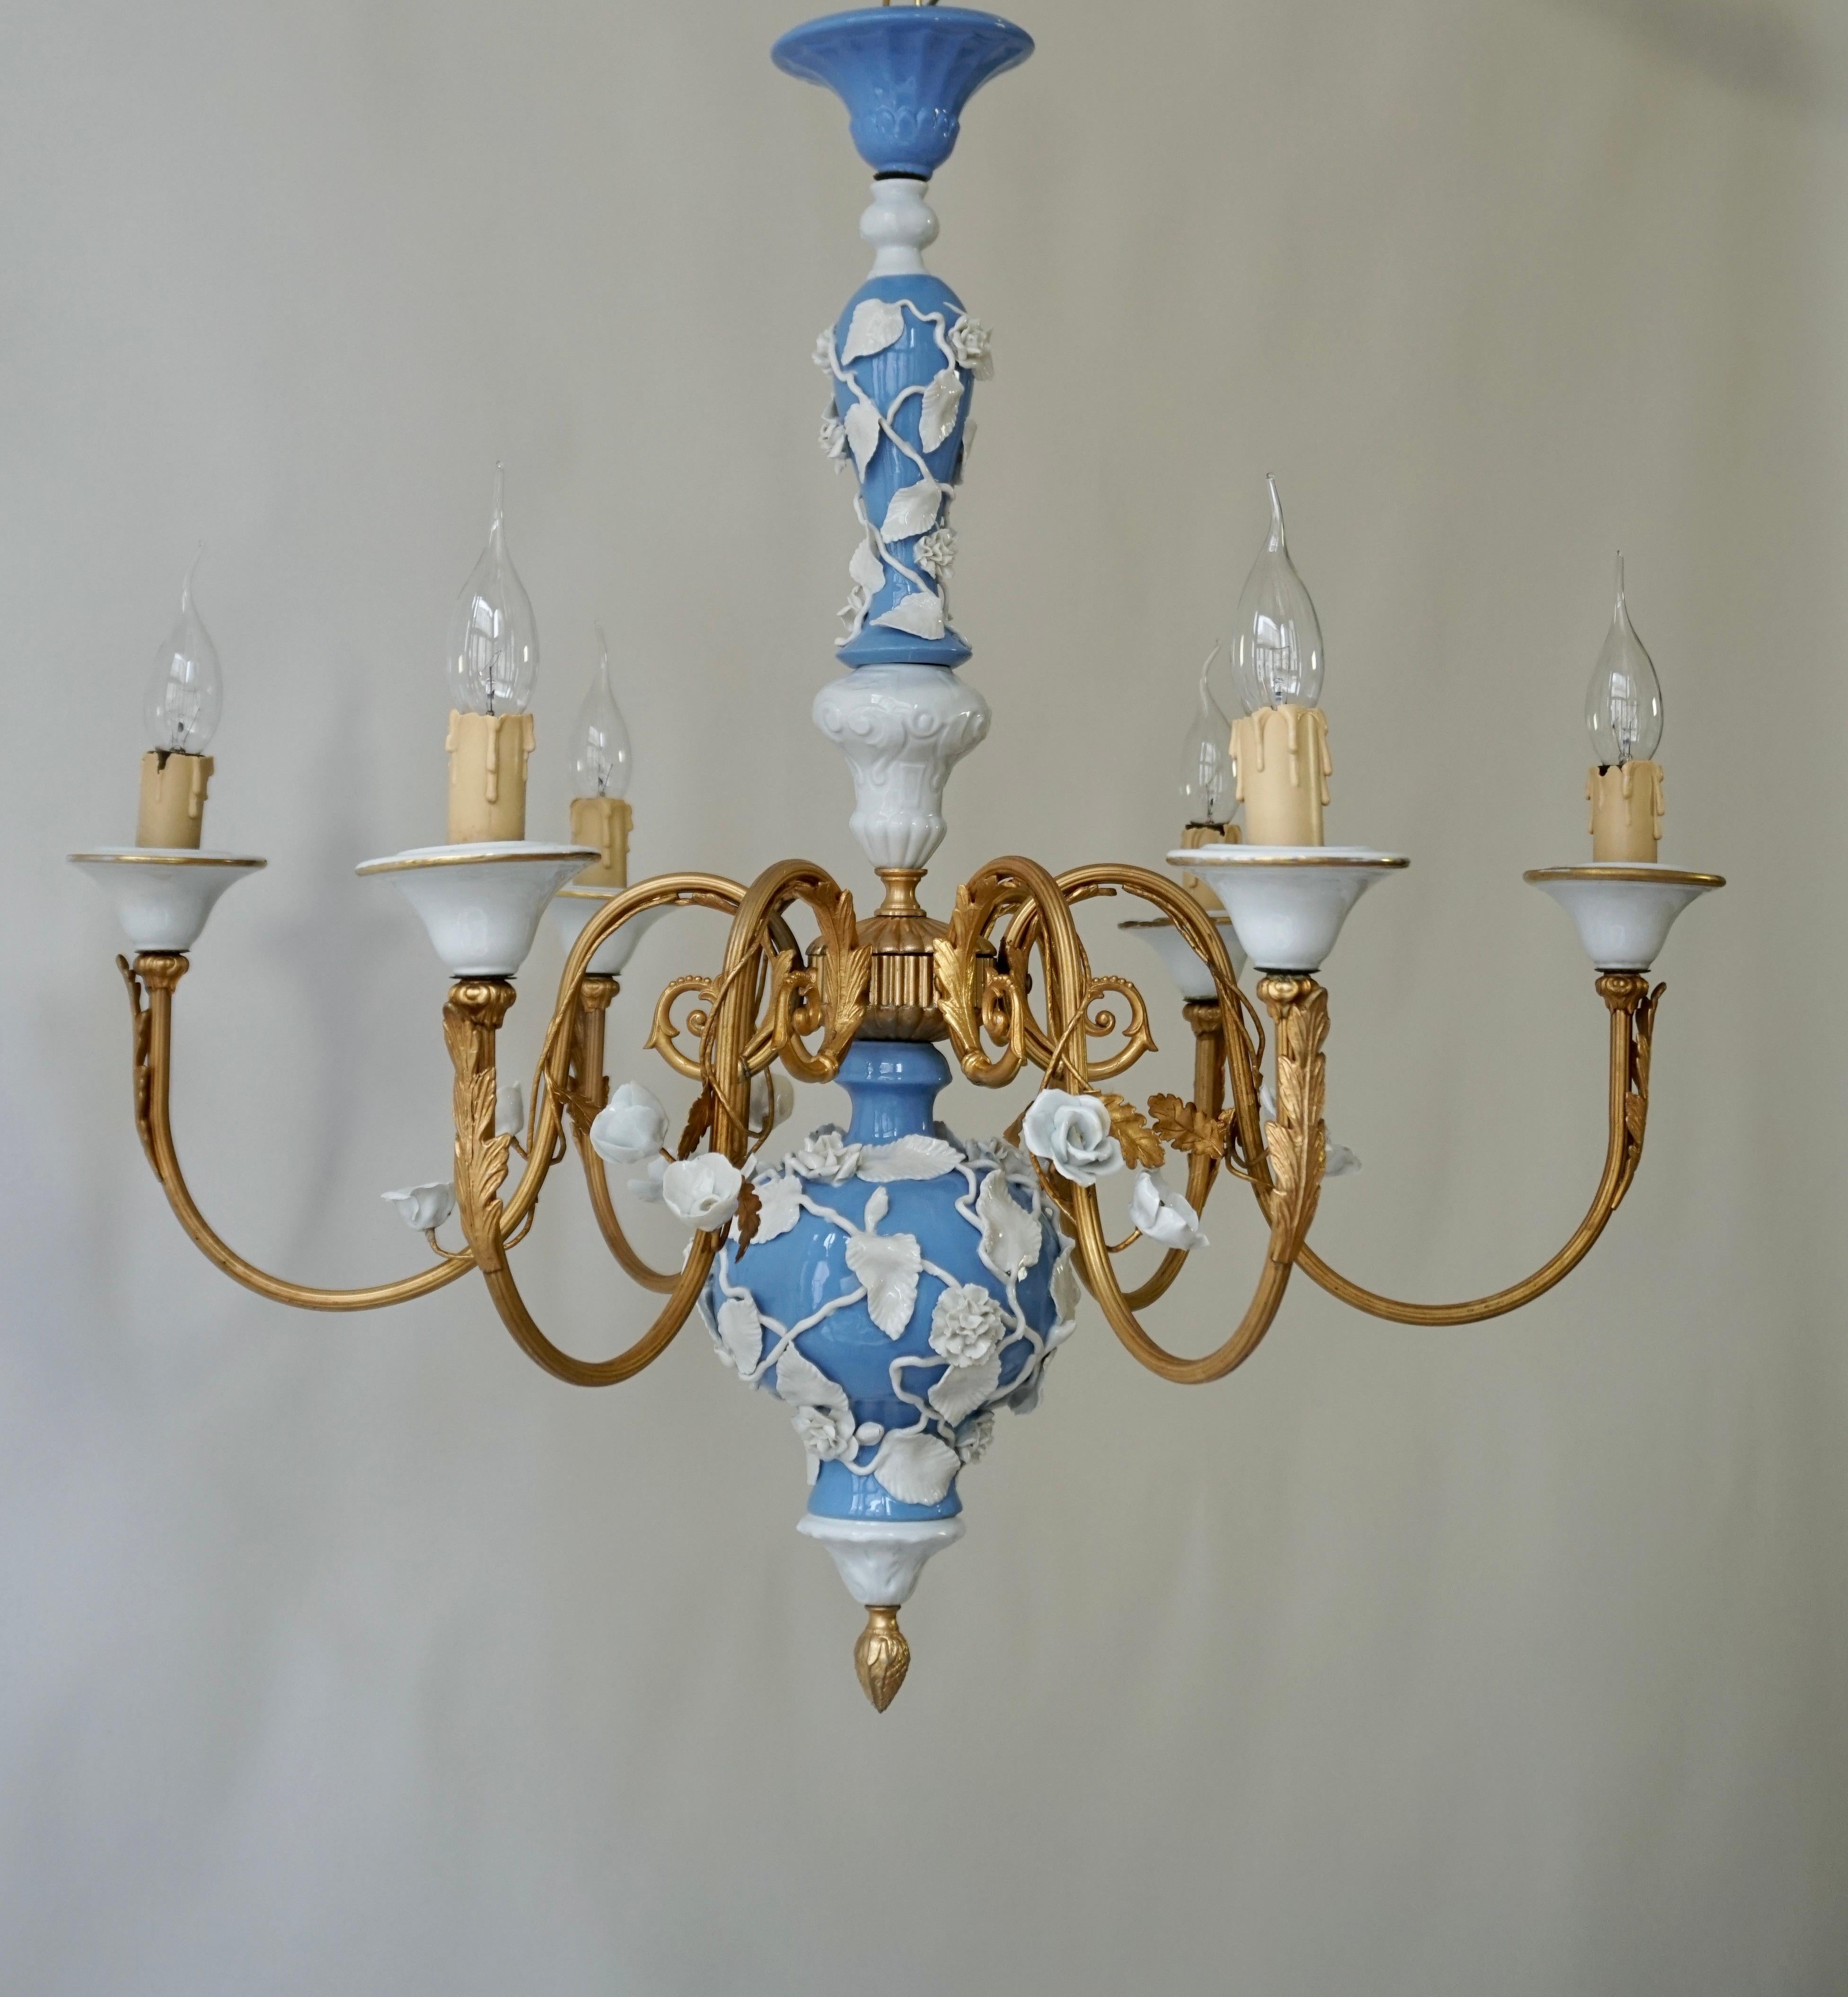 Elegant lustre en porcelaine blanche et bleue avec détails de feuilles d'acanthe dorées.
Il y a 6 bras, chacun portant une seule douille de lampe (e14). 

La lampe dispose de six douilles pour les petites lampes à incandescence à culot à vis ou les